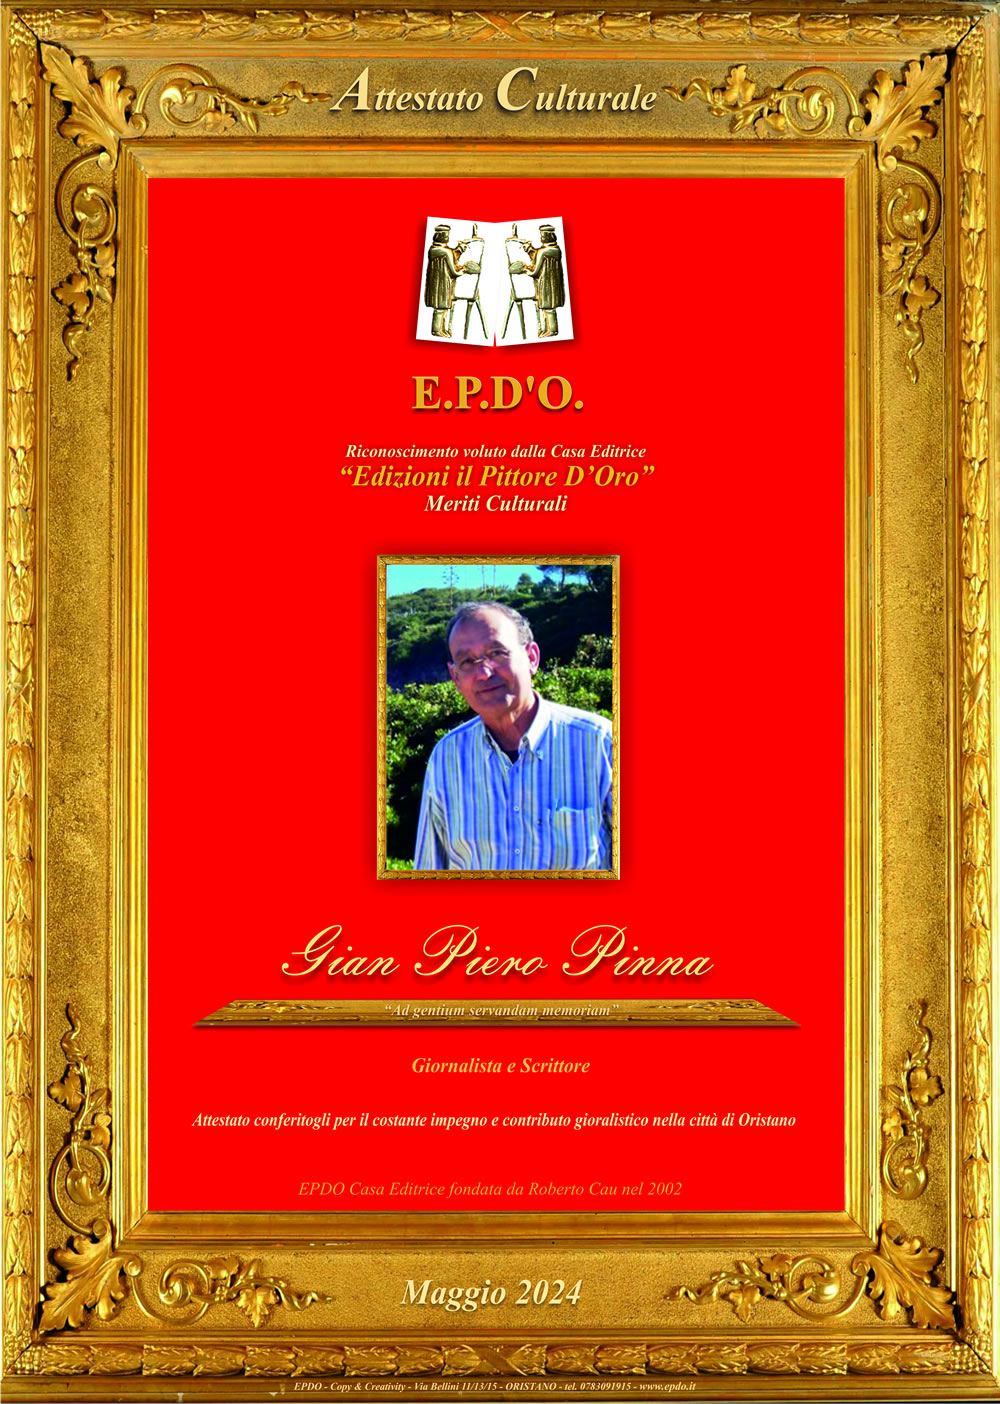 EPDO - Attestato Culturale Gian Piero Pinna